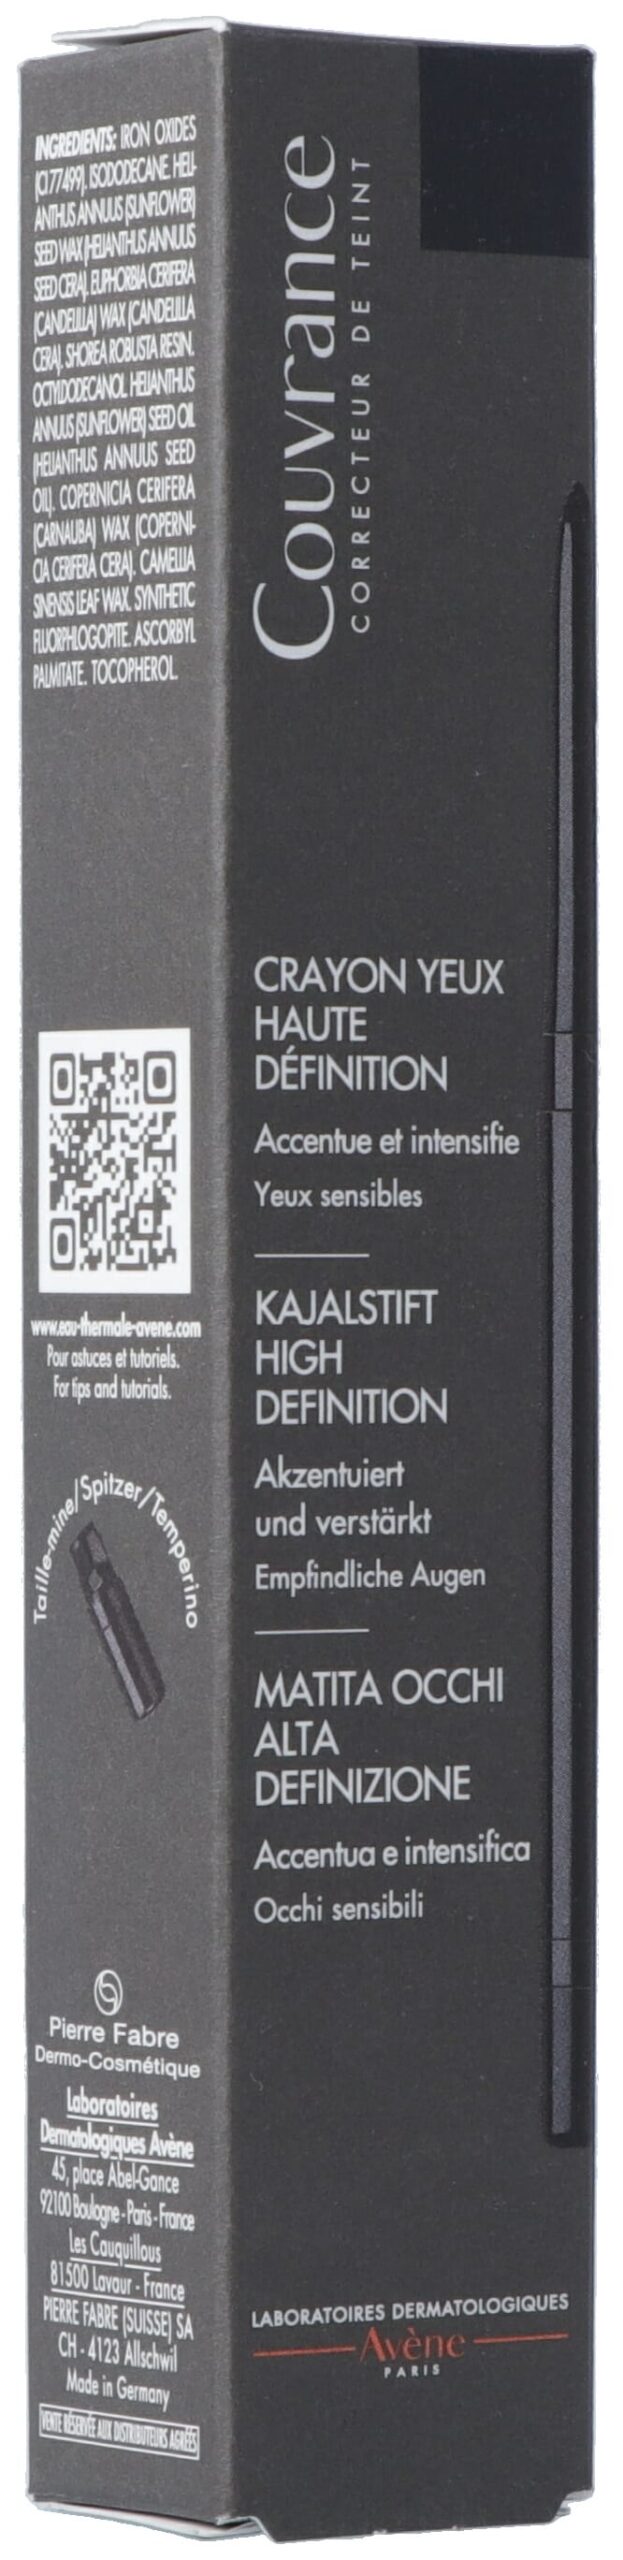 AVENE Couvrance Kajalstift High Definit noir 0.3 g